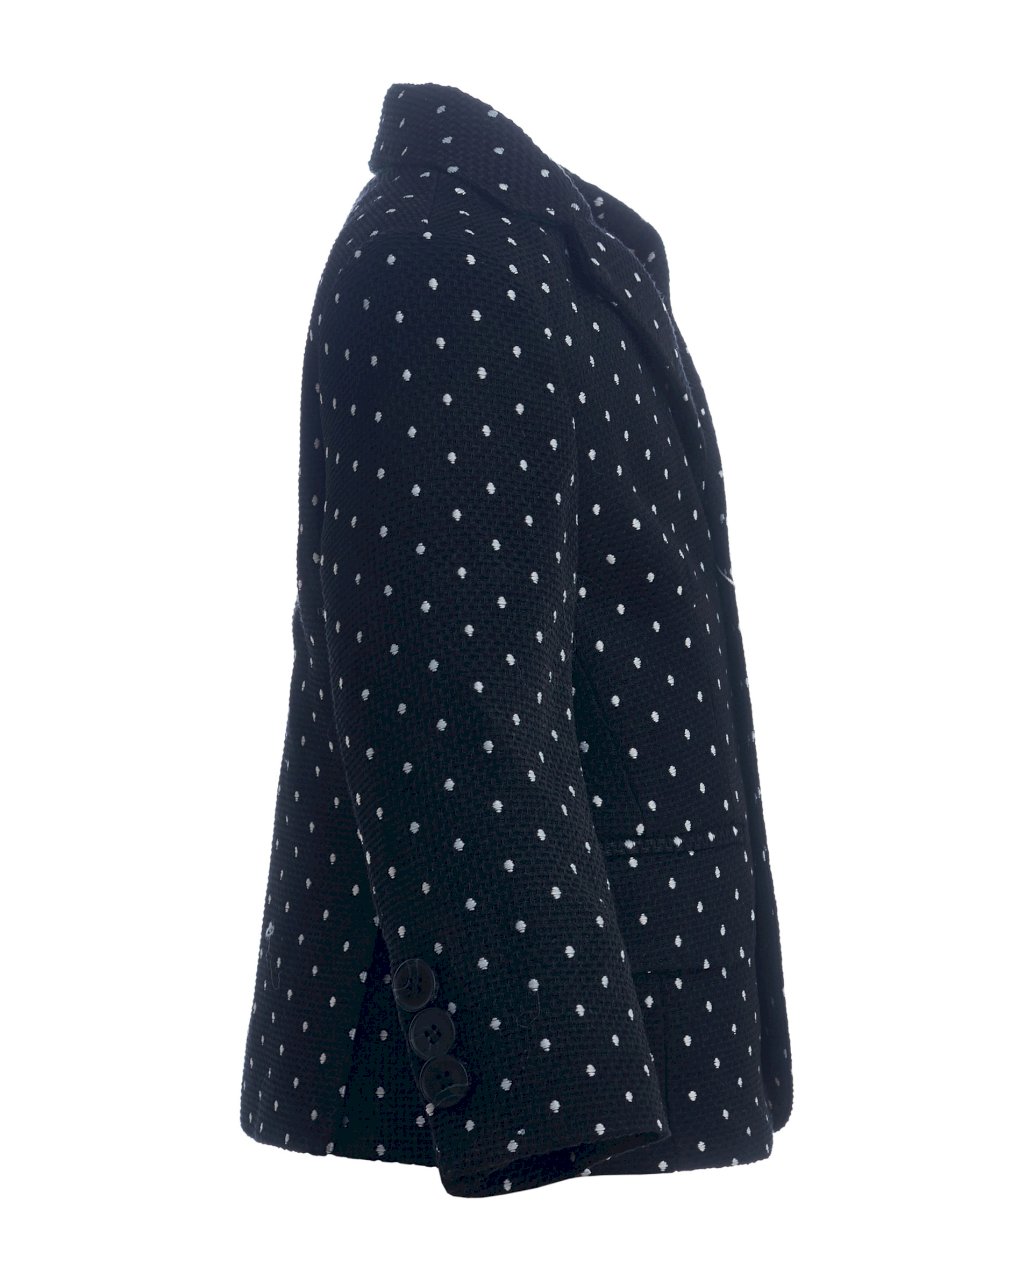 Купить Черный пиджак в горошек Gulliver в интернет-магазине, цена 2499 руб недорого